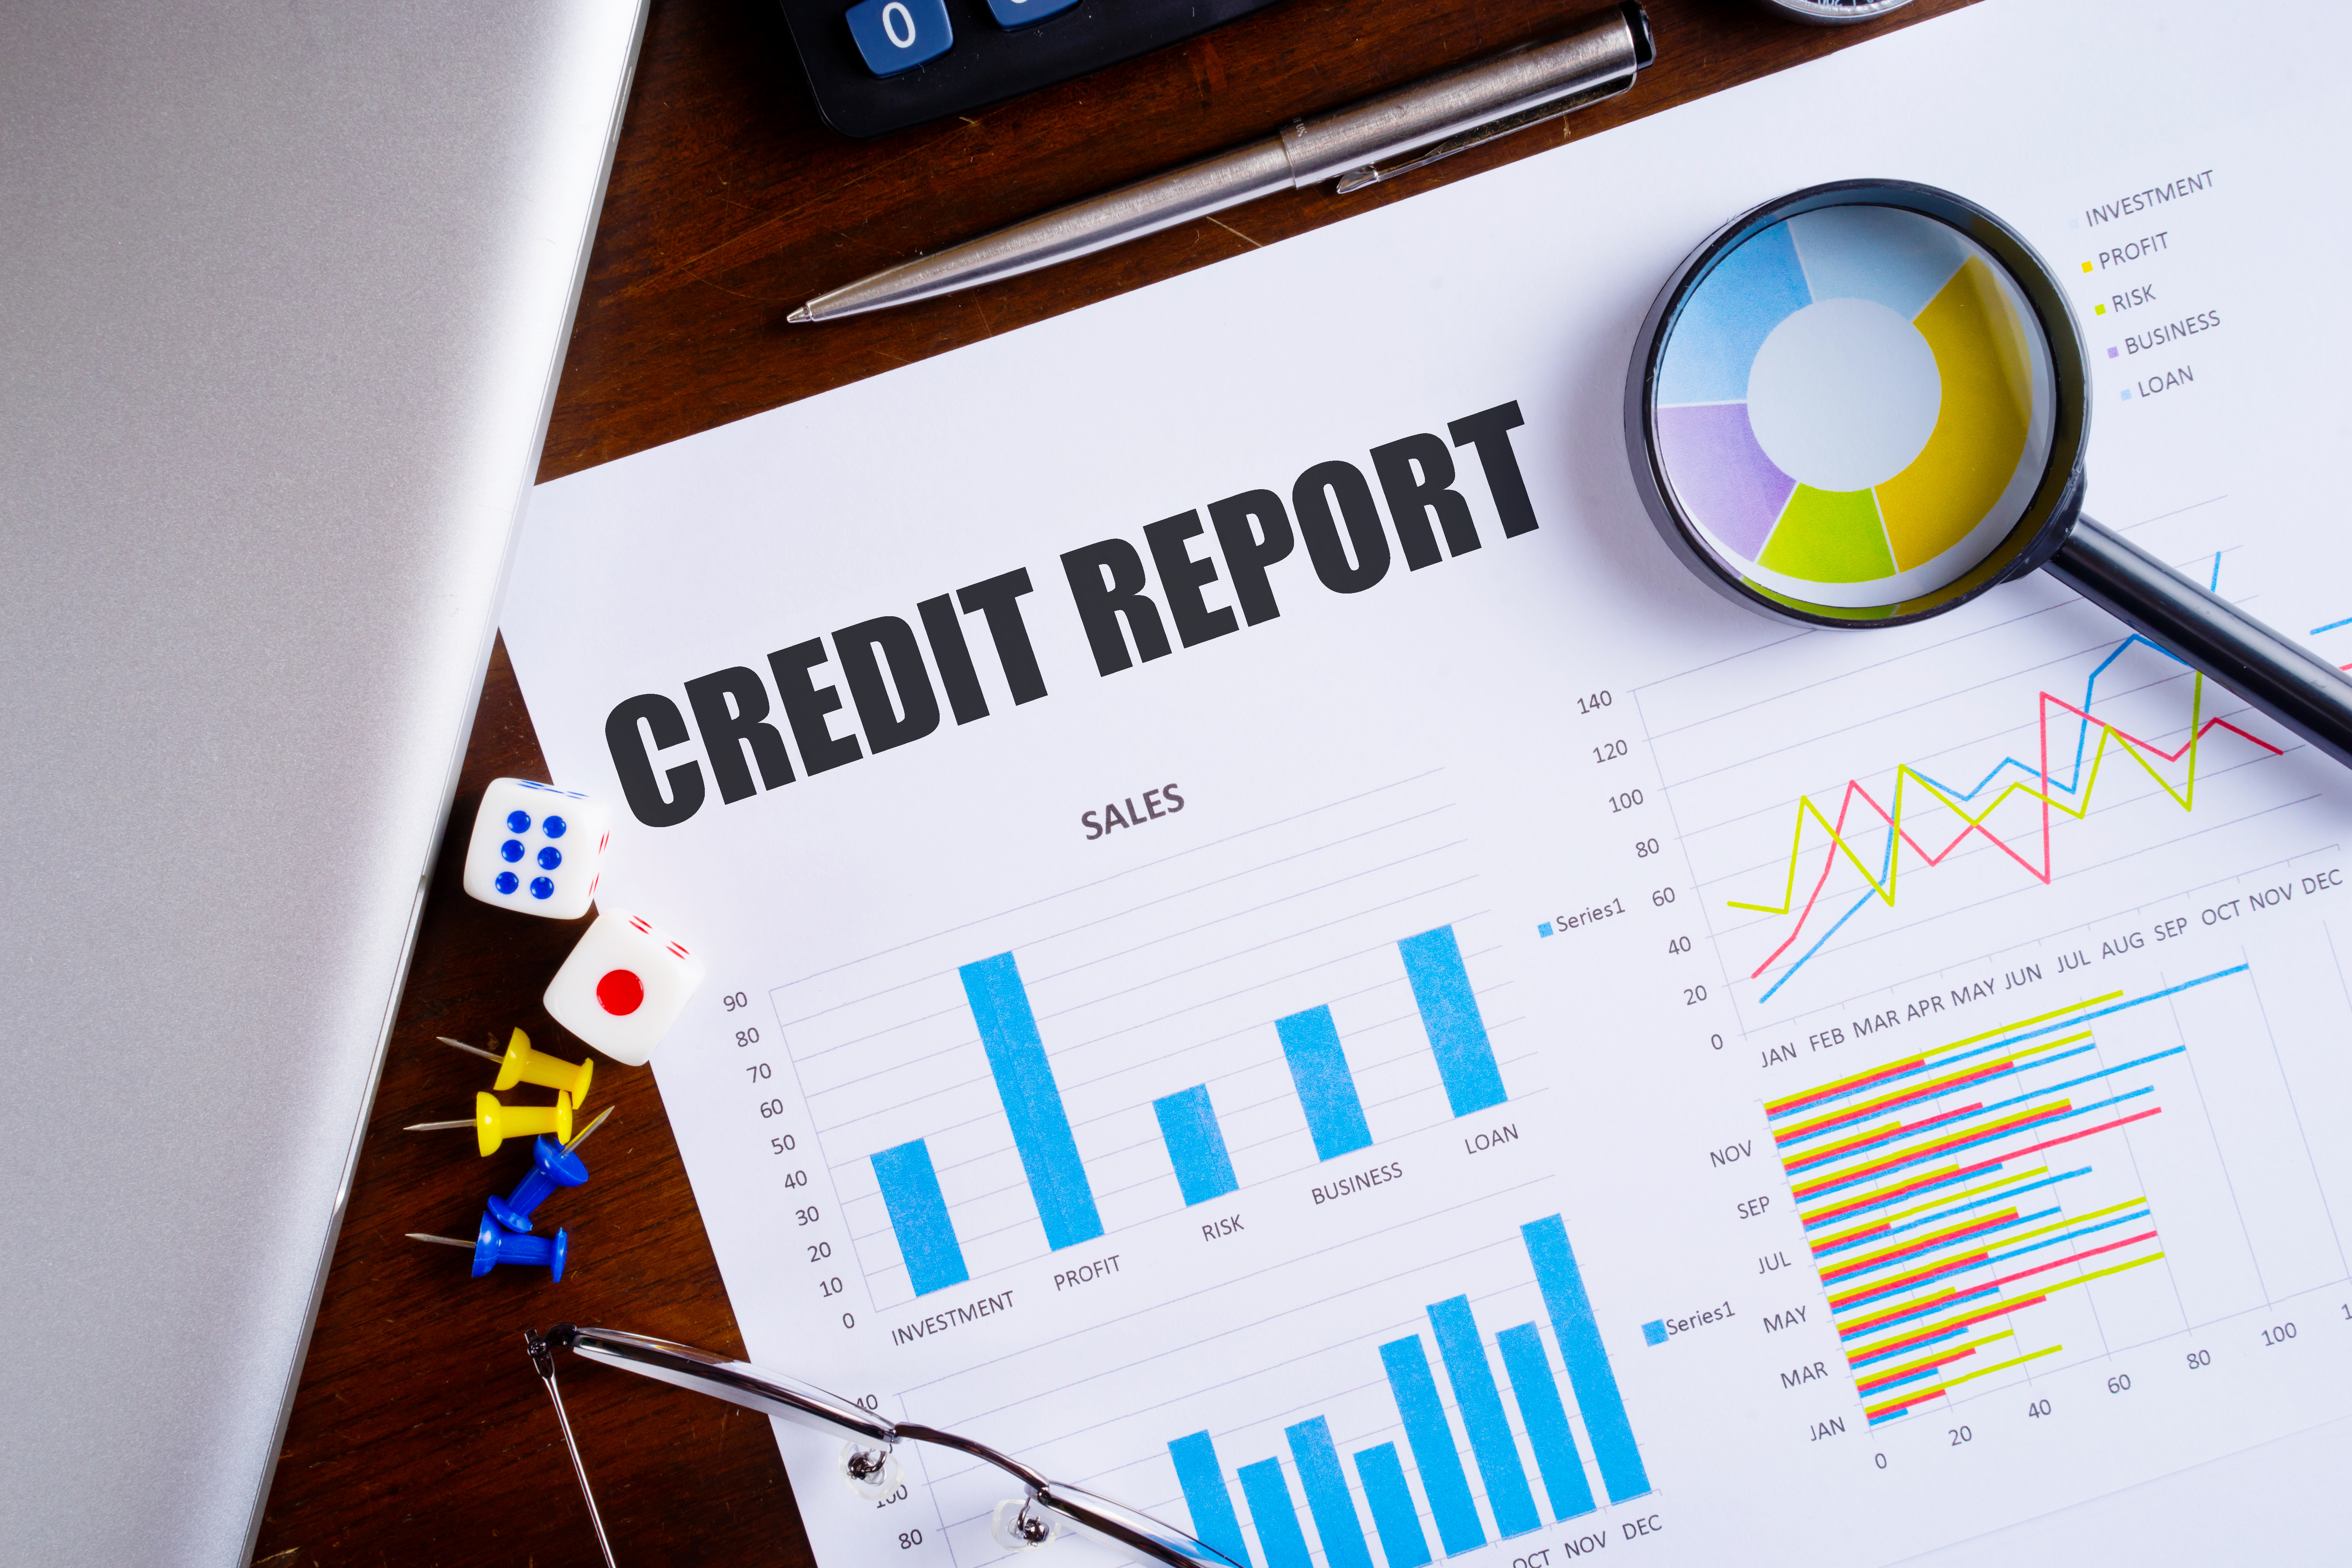 credit-report